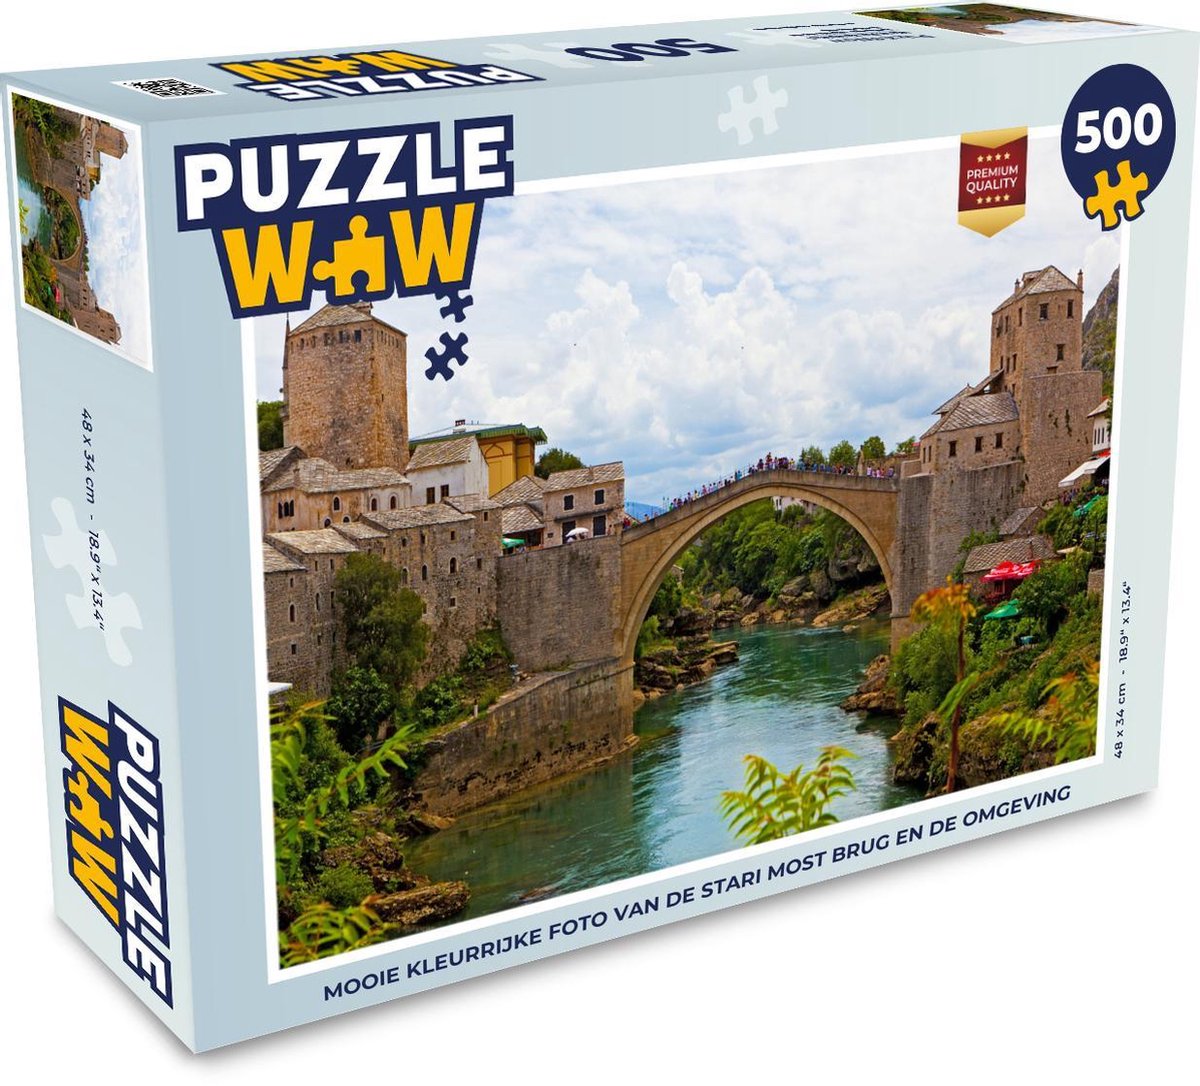 Afbeelding van product Puzzel 500 stukjes Stari Most - Mooie kleurrijke foto van de Stari Most brug en de omgeving - PuzzleWow heeft +100000 puzzels